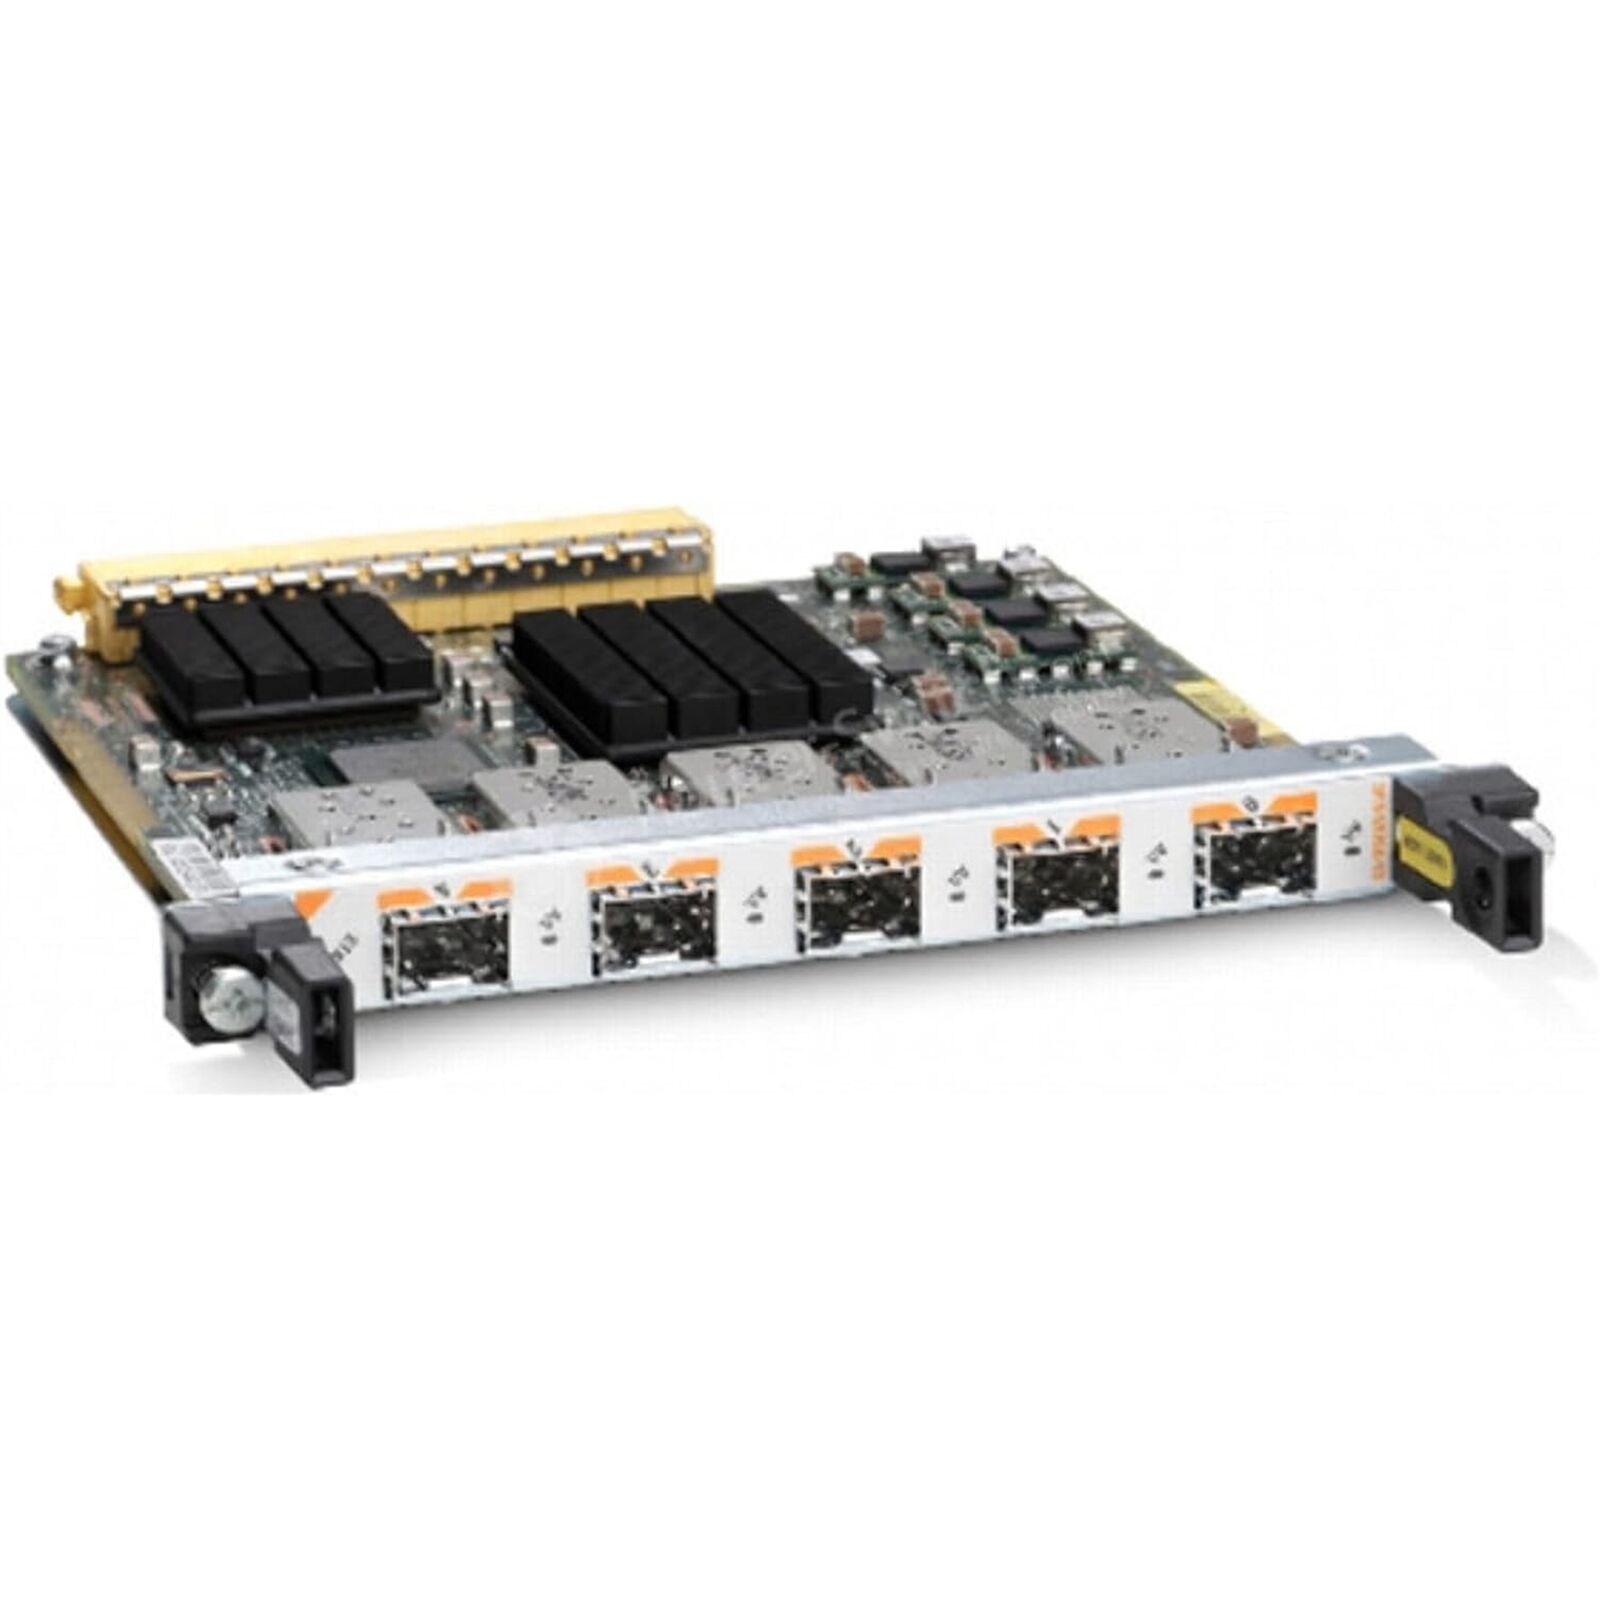 Cisco SPA-5X1GE-V2 5-Port Gigabit Ethernet Shared Port Adapter